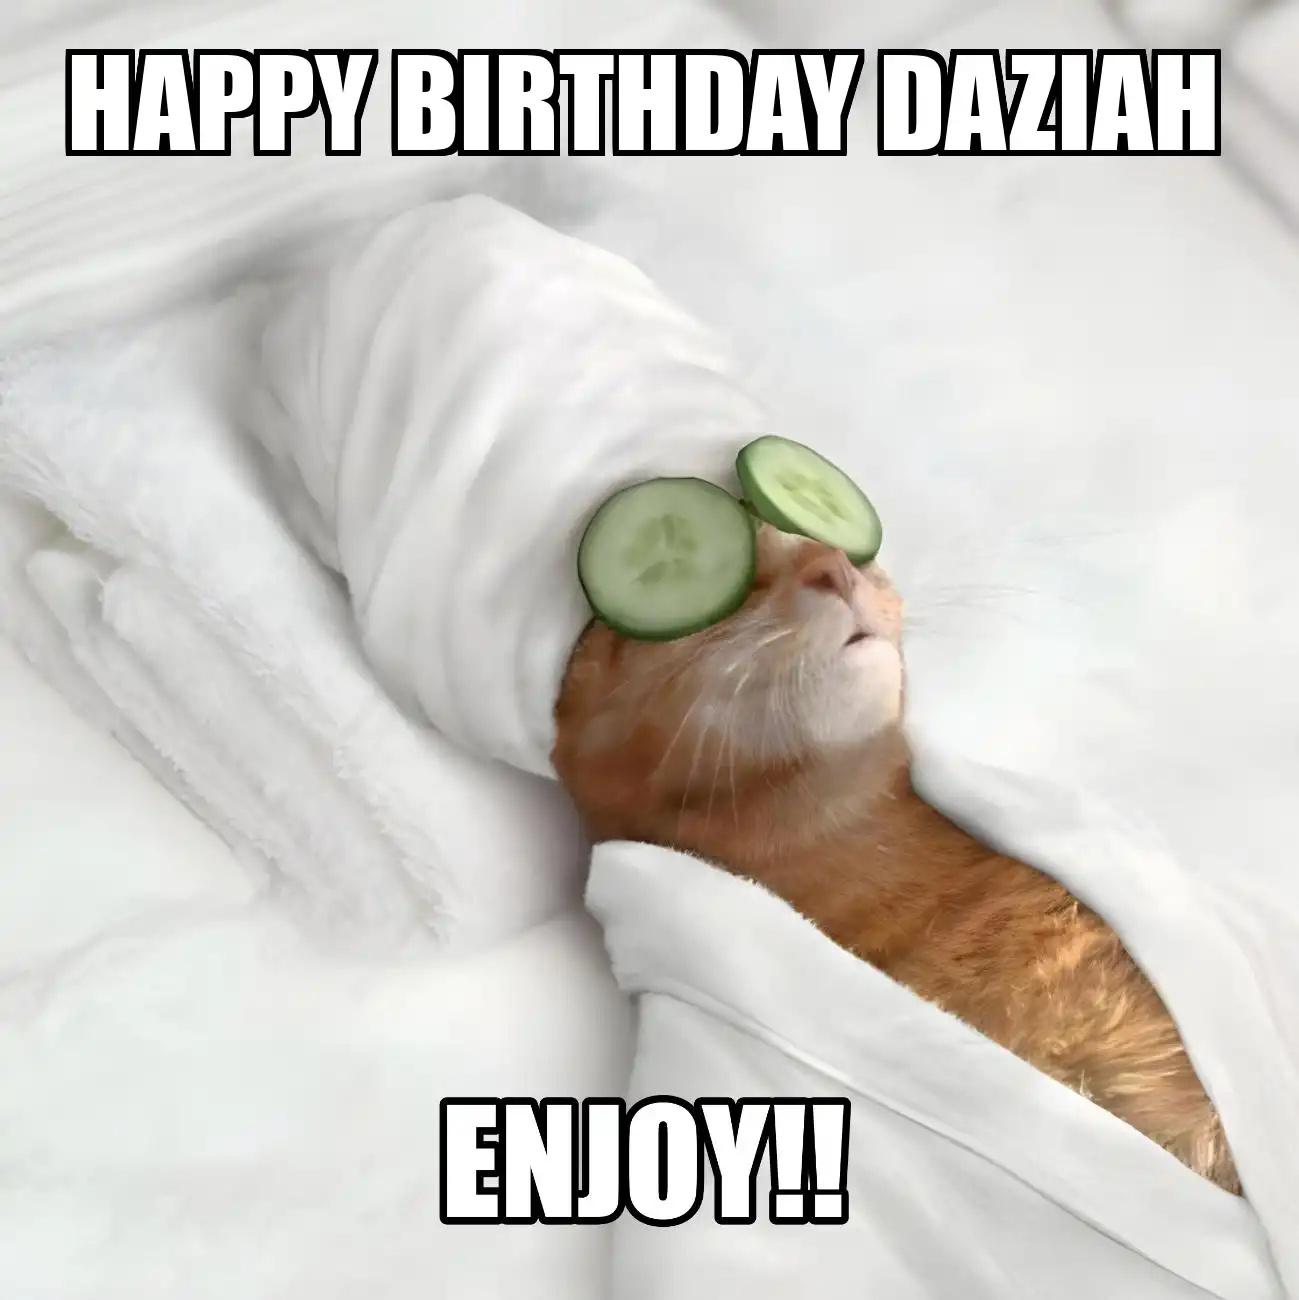 Happy Birthday Daziah Enjoy Cat Meme